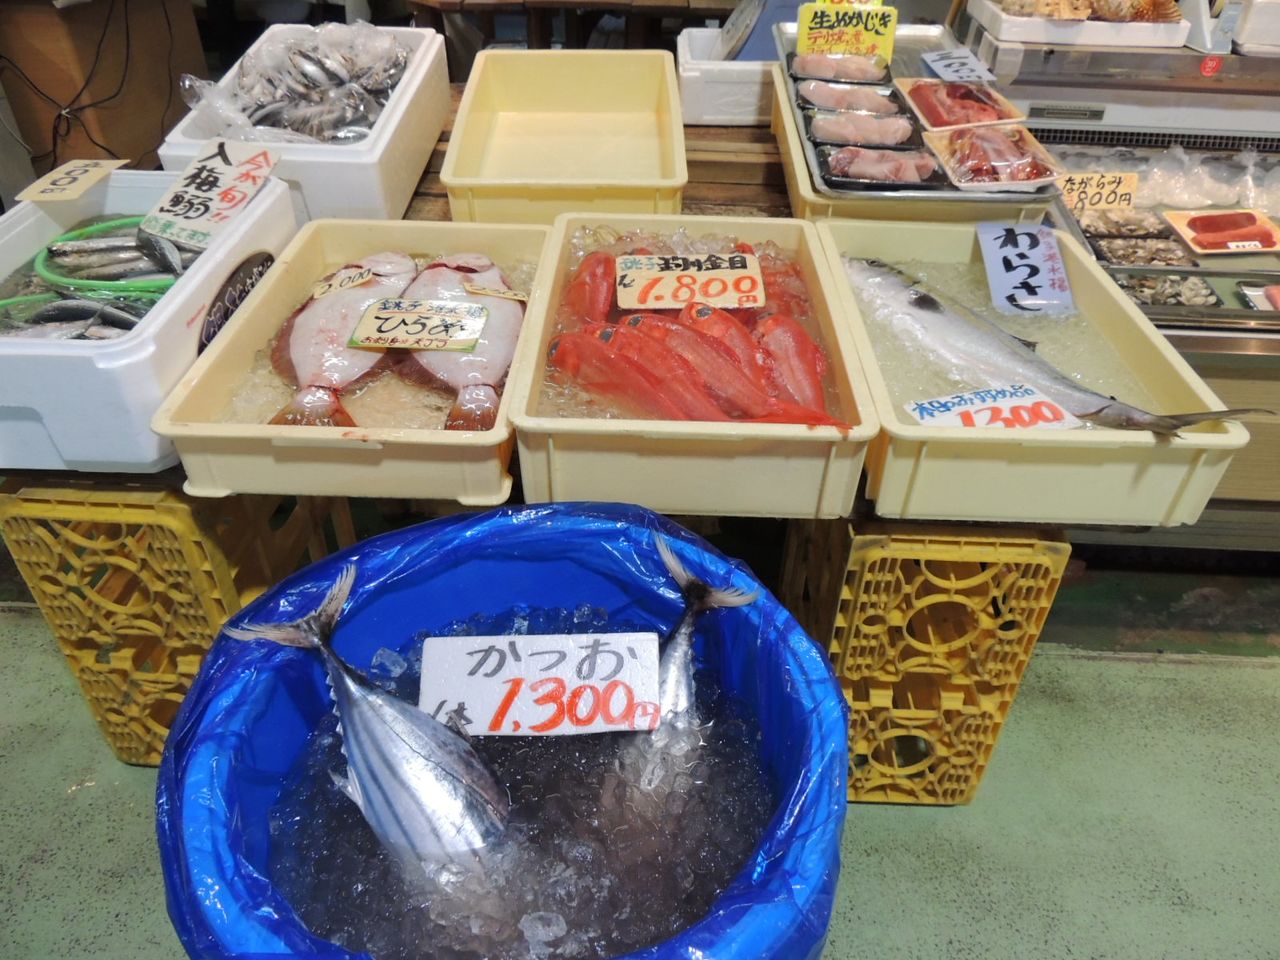 Se pueden adquirir pescados enteros frescos, como la sardina nyūbai iwashi, entre muchos otros. Por supuesto, el comprador puede solicitar que se los corten. (Imagen del autor) 